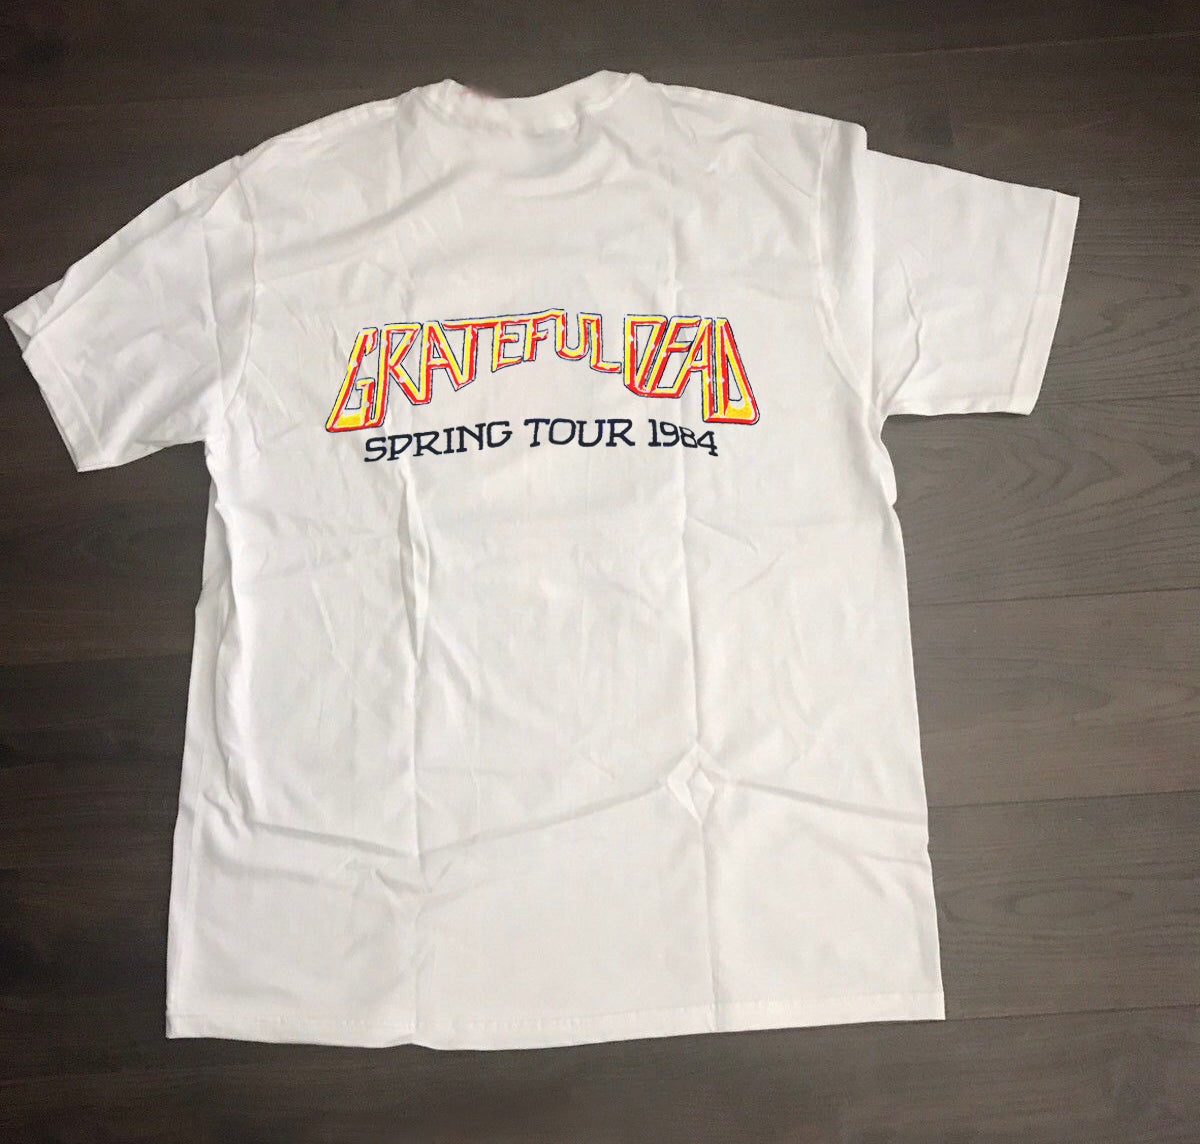 Rare Vintage Grateful Dead Jerry Garcia 1978 Tour Shirt - Your